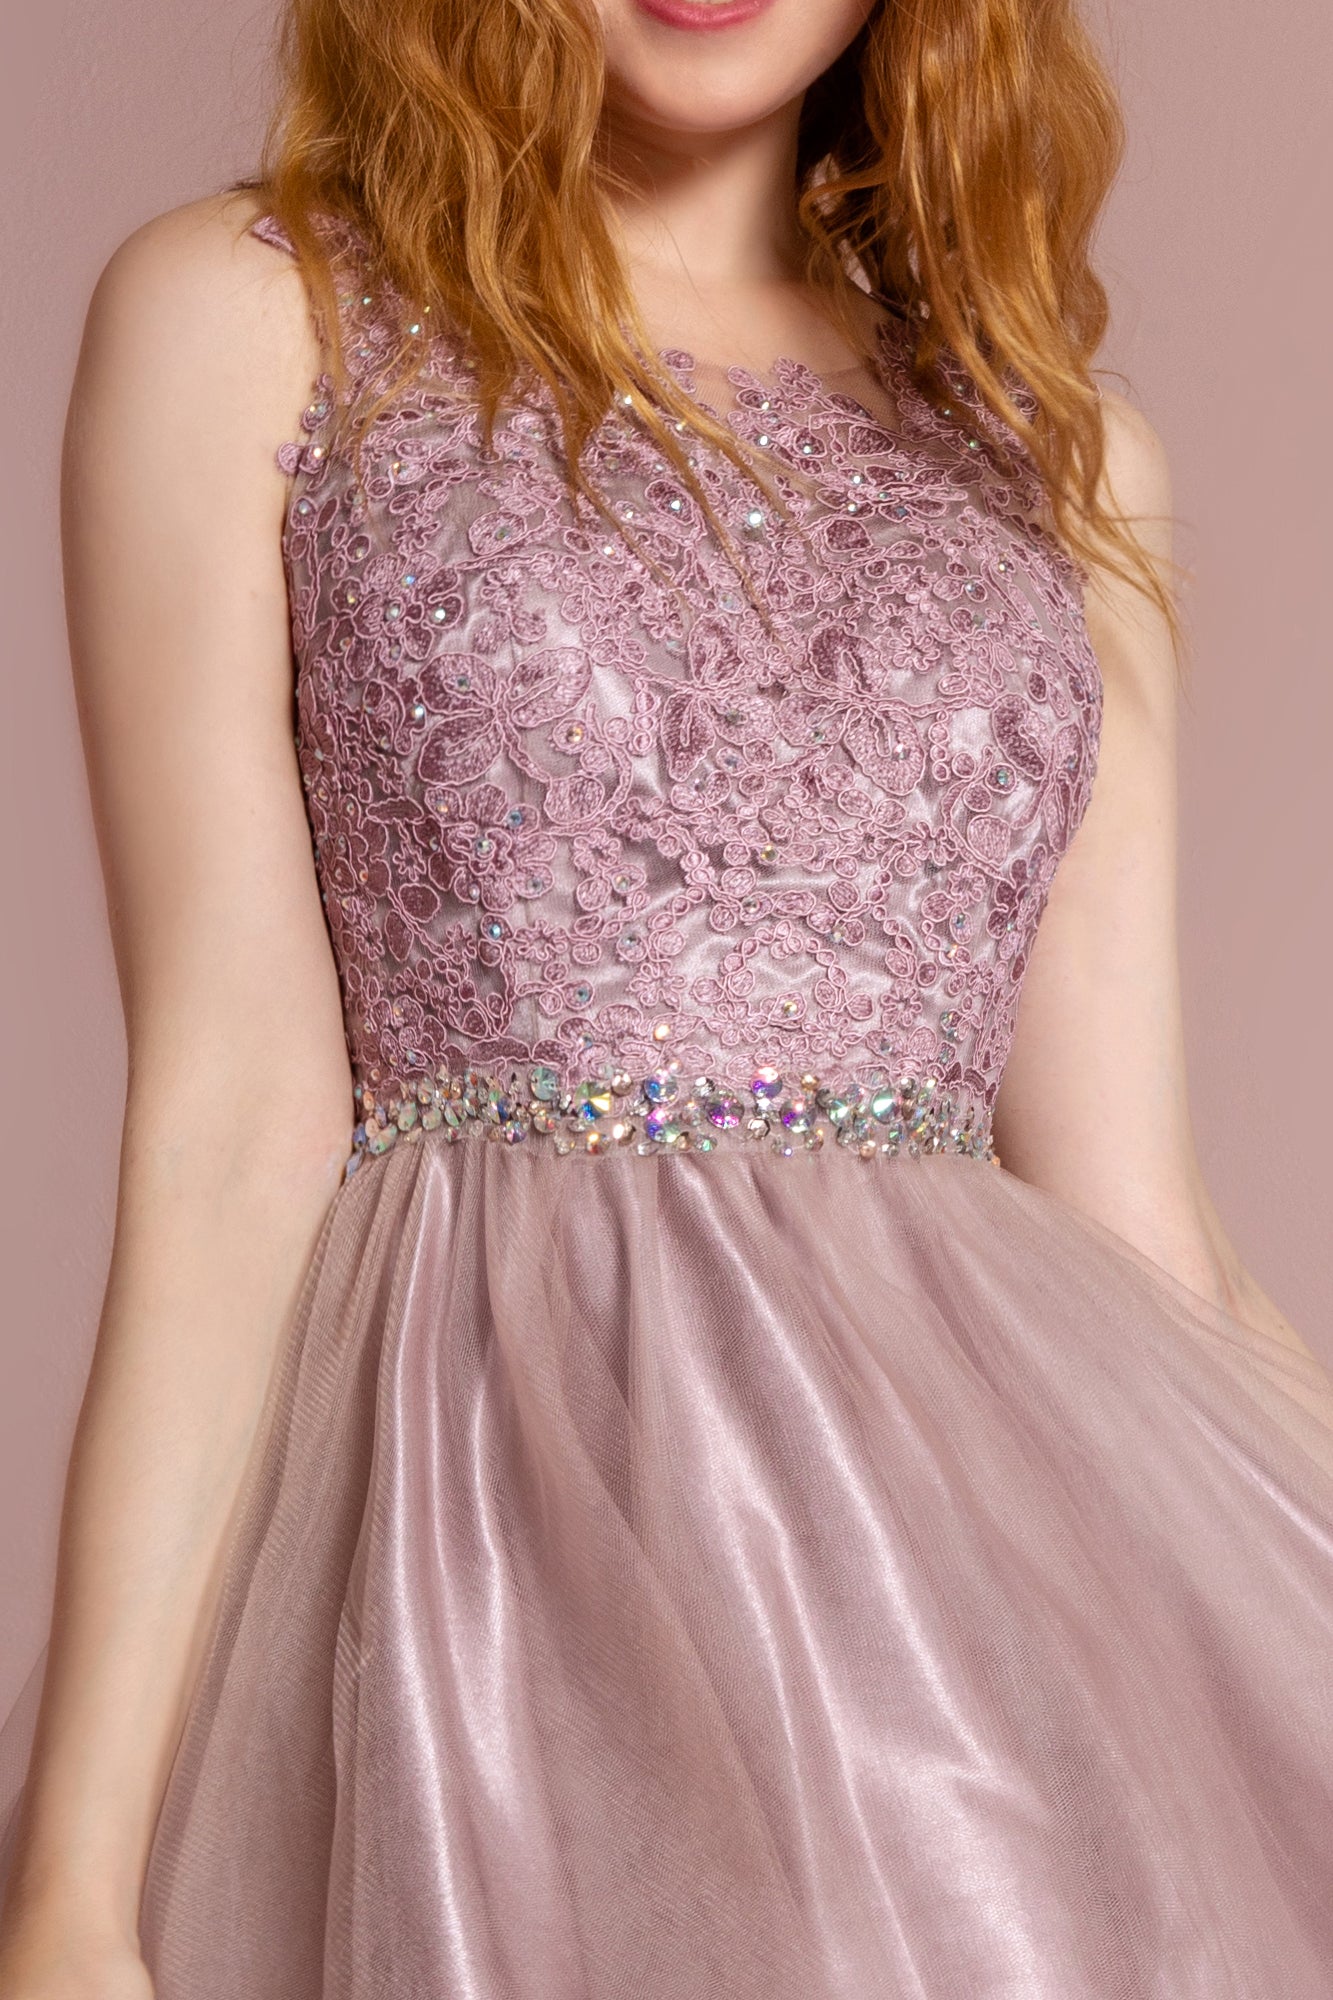 Lace Illusion Top A-line Short Dress Cocktail - The Dress Outlet Elizabeth K Mauve